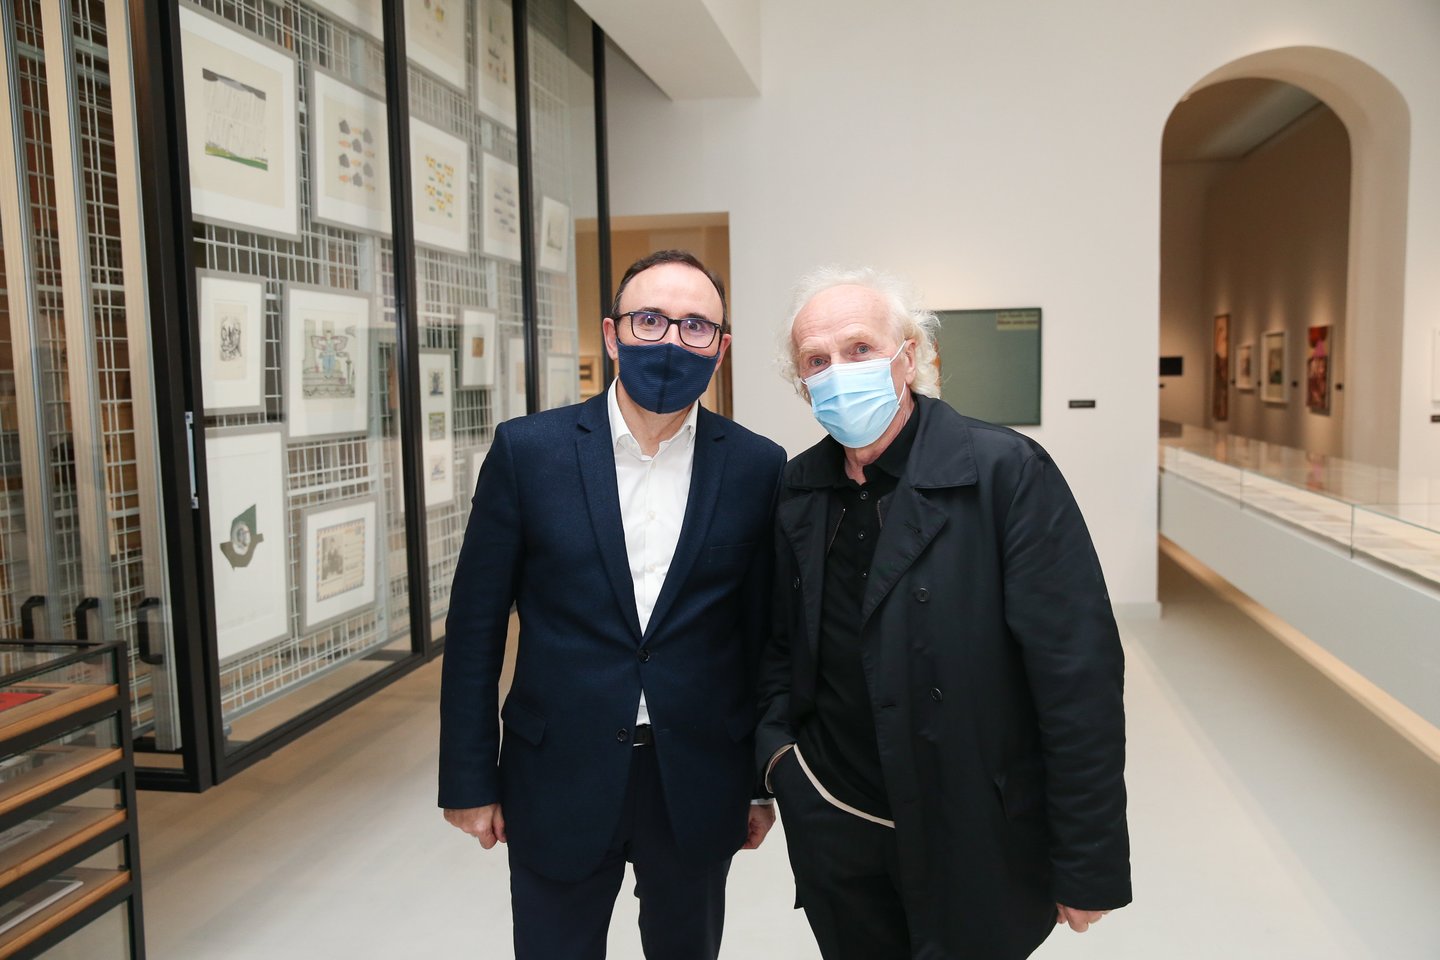  Vladimiras Tarasovas (dešinėje) ir Arūnas Gelūnas Radvilų rūmų dailės muziejuje.<br> R.Danisevičiaus nuotr.